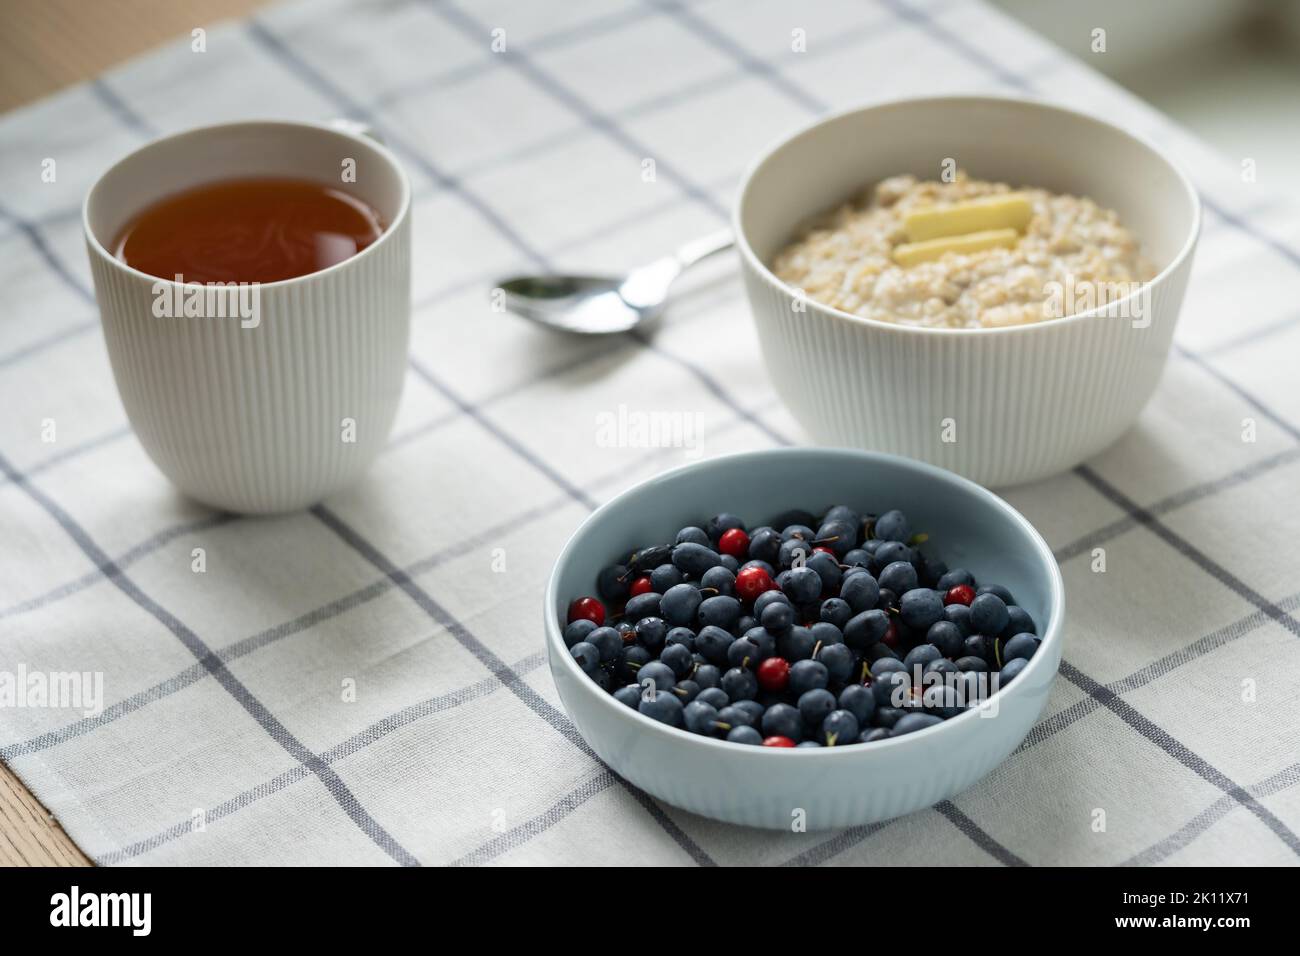 Gesundes Essen Frühstück mit Haferbrei Haferbrei in einer Schüssel mit Sommerbeeren, Butterscheibe, Tasse Tee. Stockfoto